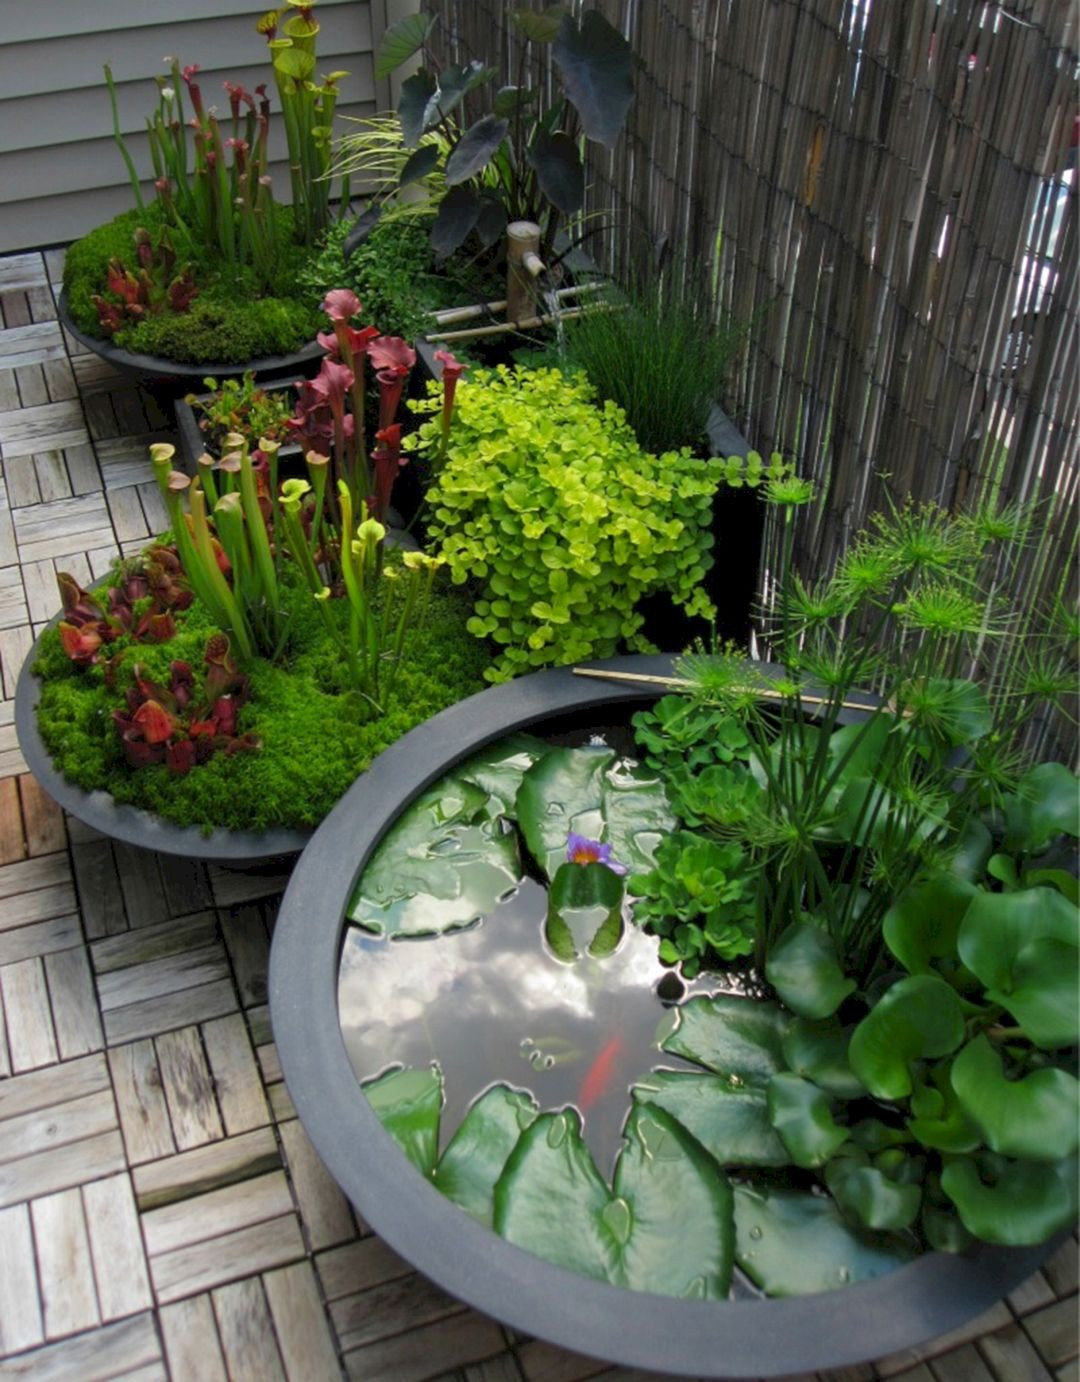 Best ideas about Zen Garden Ideas
. Save or Pin 76 Beautiful Zen Garden Ideas For Backyard 660 – GooDSGN Now.